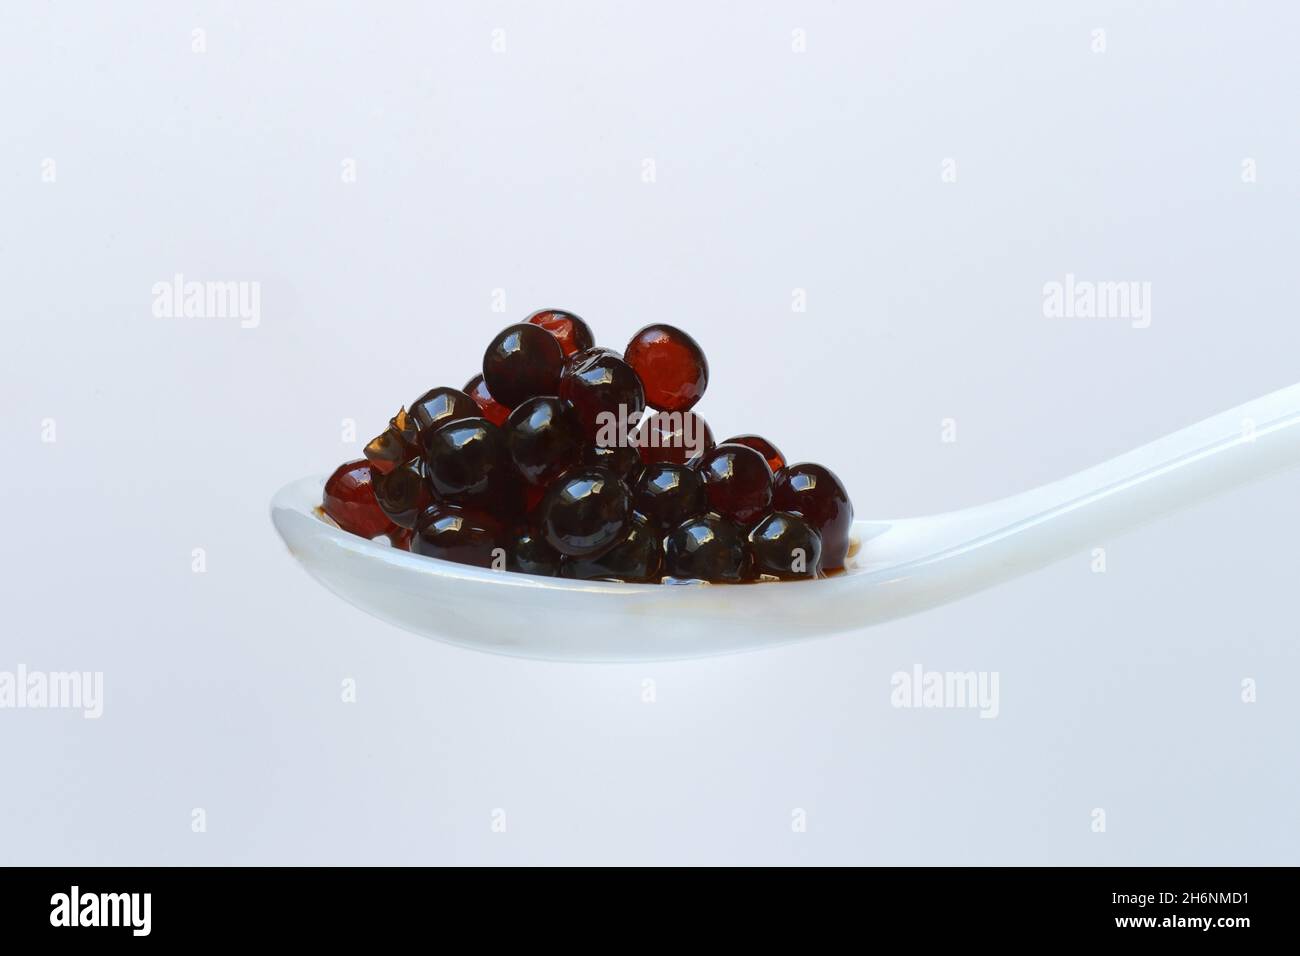 Aceto pearls in spoon, Aceto Balsamico di Modena, vinegar Stock Photo